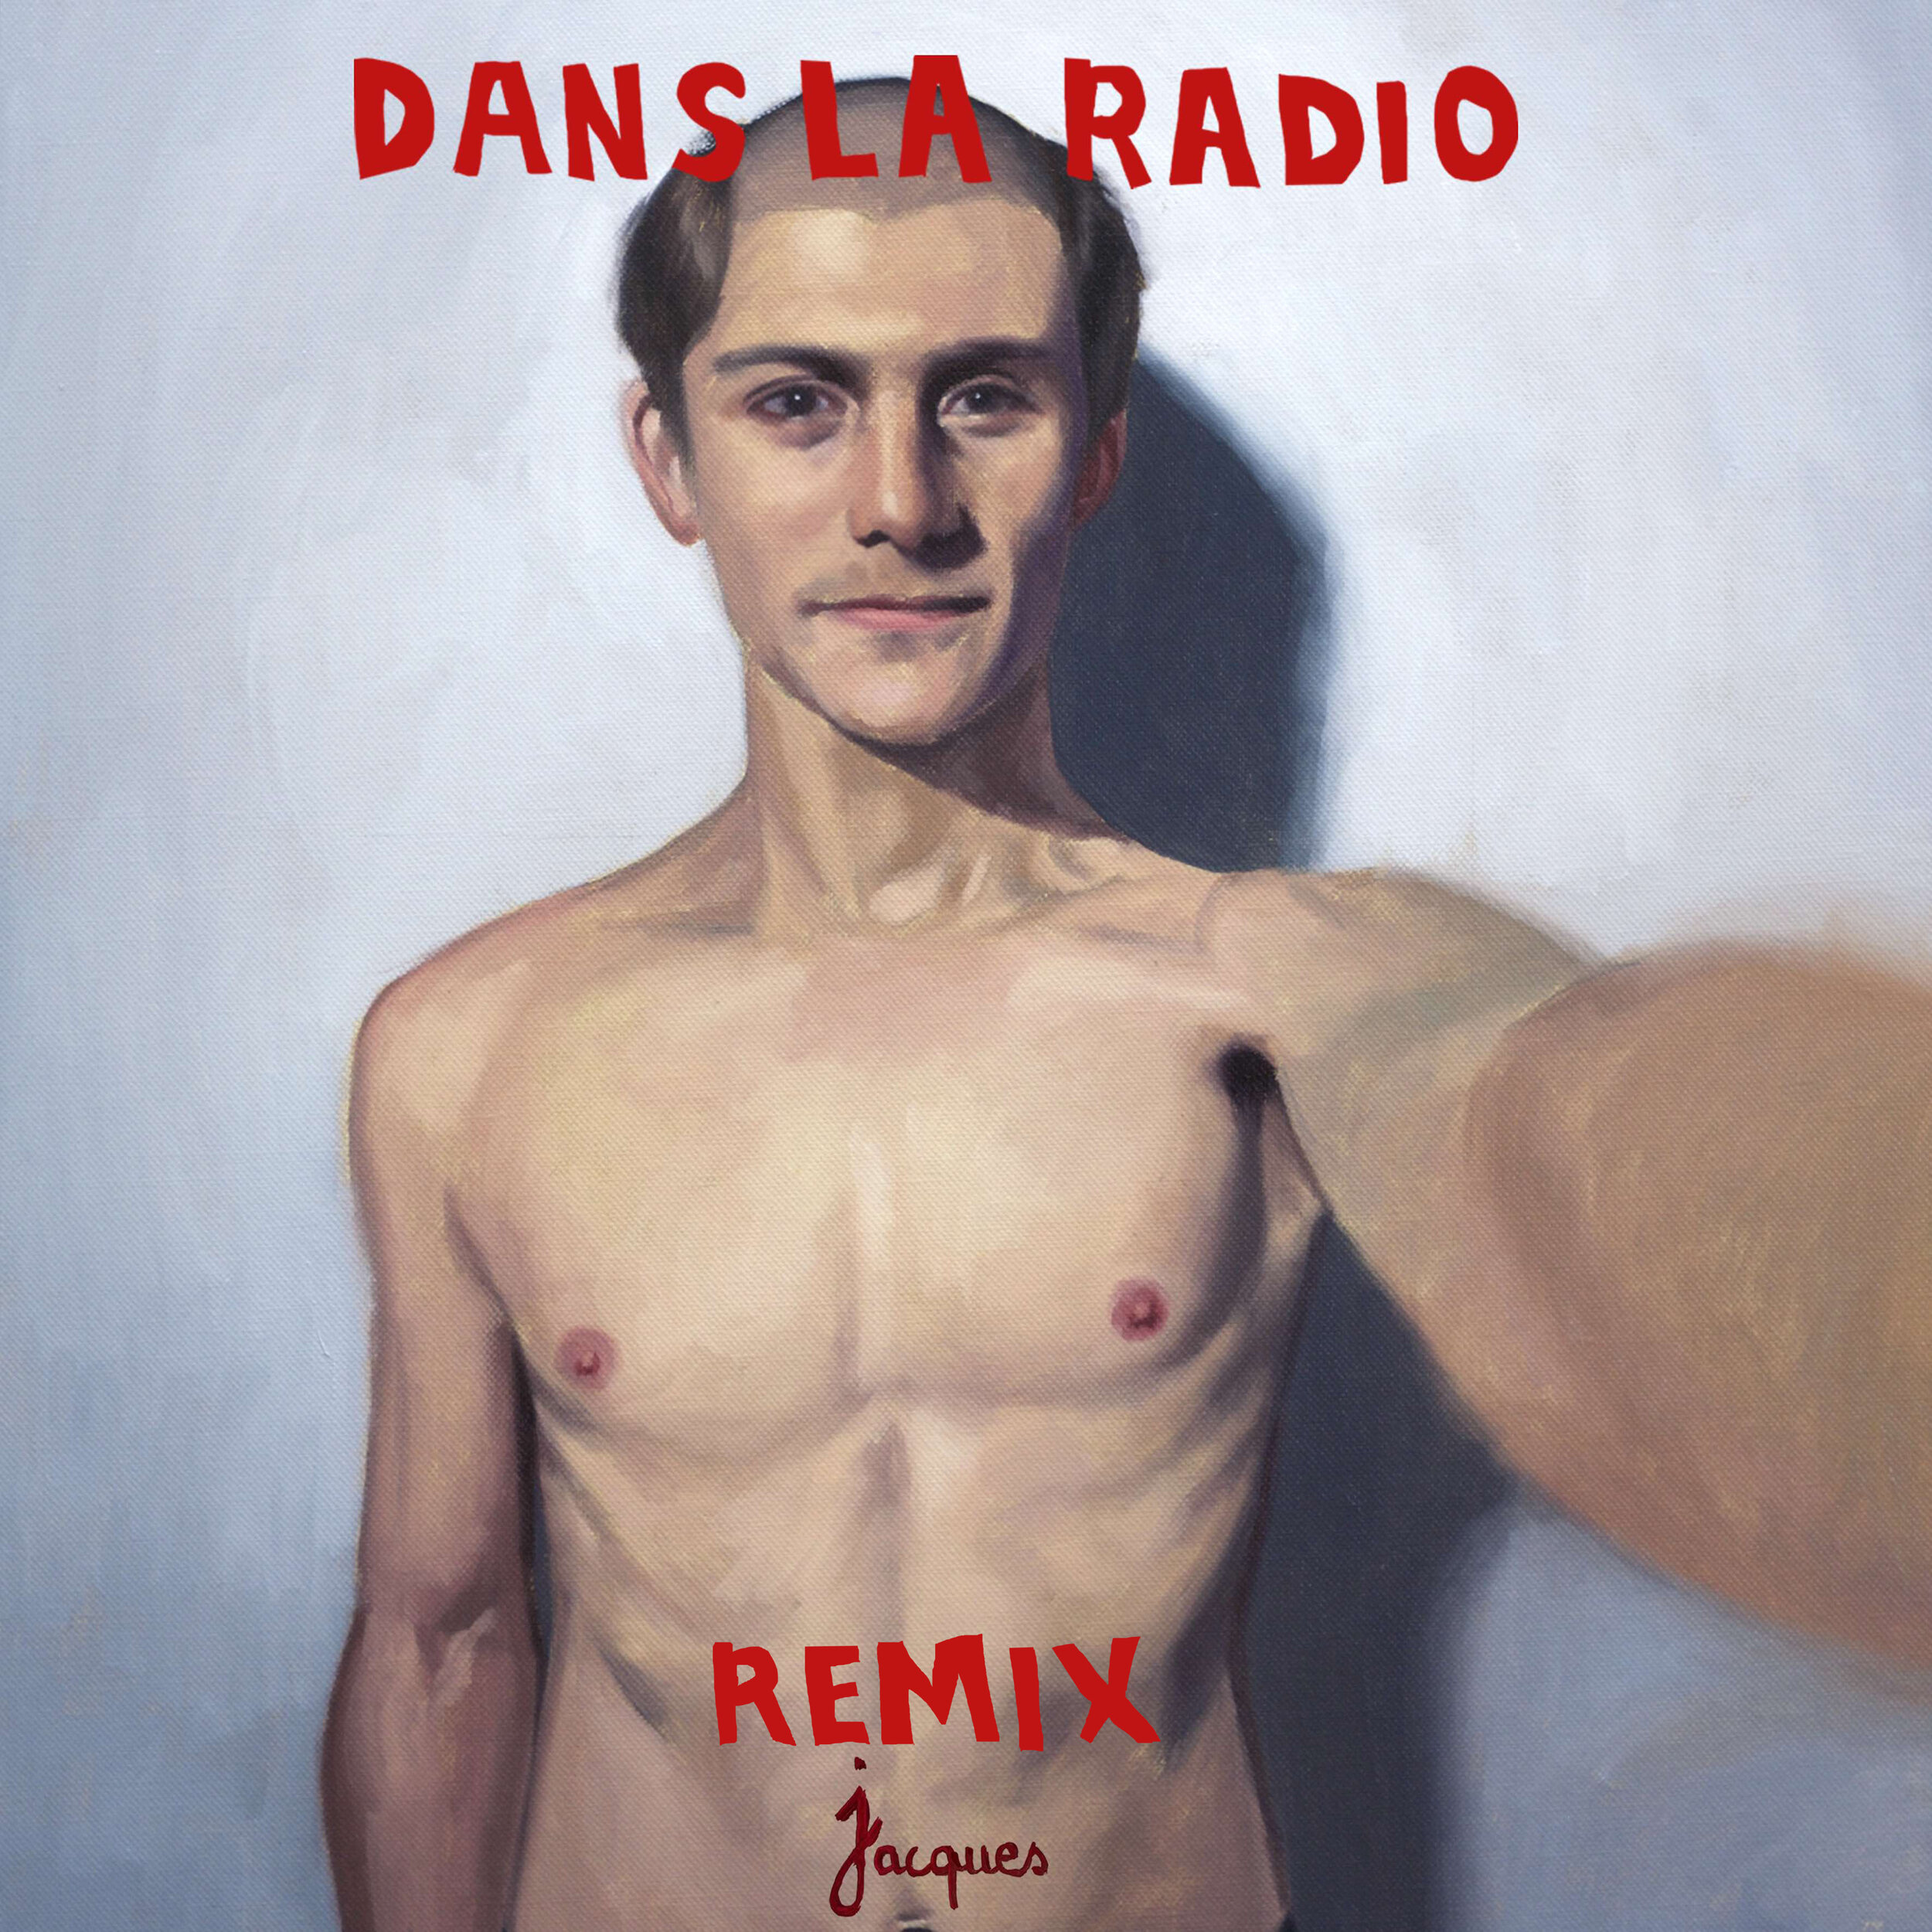 Jacques_dans-la-radio-remix.jpg